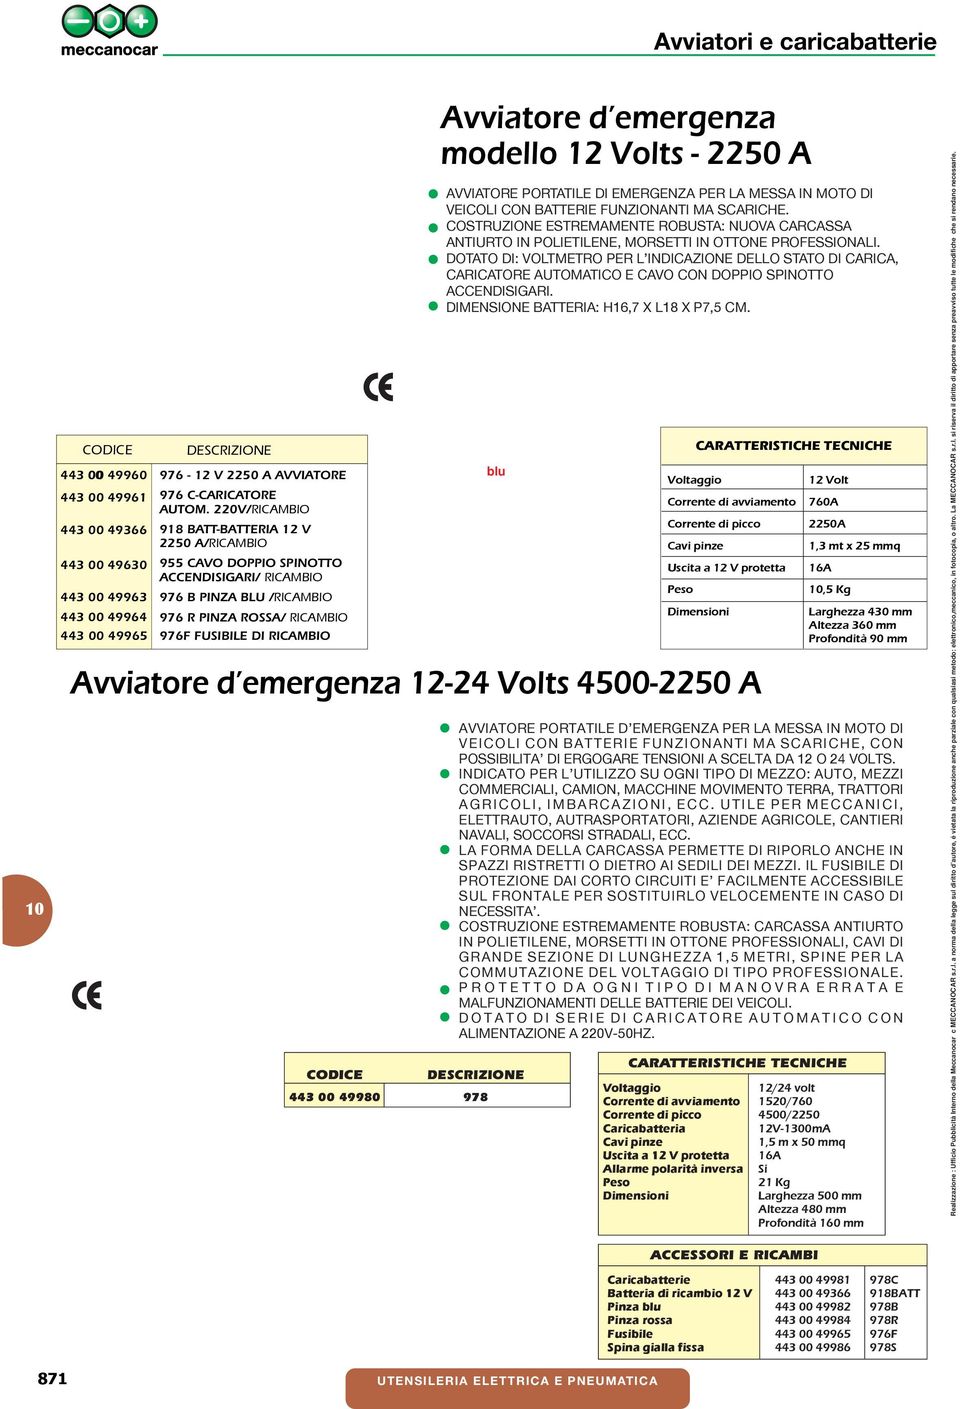 emergenza modello 12 Volts - 2250 A AVVIATORE PORTATILE DI EMERGENZA PER LA MESSA IN MOTO DI VEICOLI CON BATTERIE FUNZIONANTI MA SCARICHE.